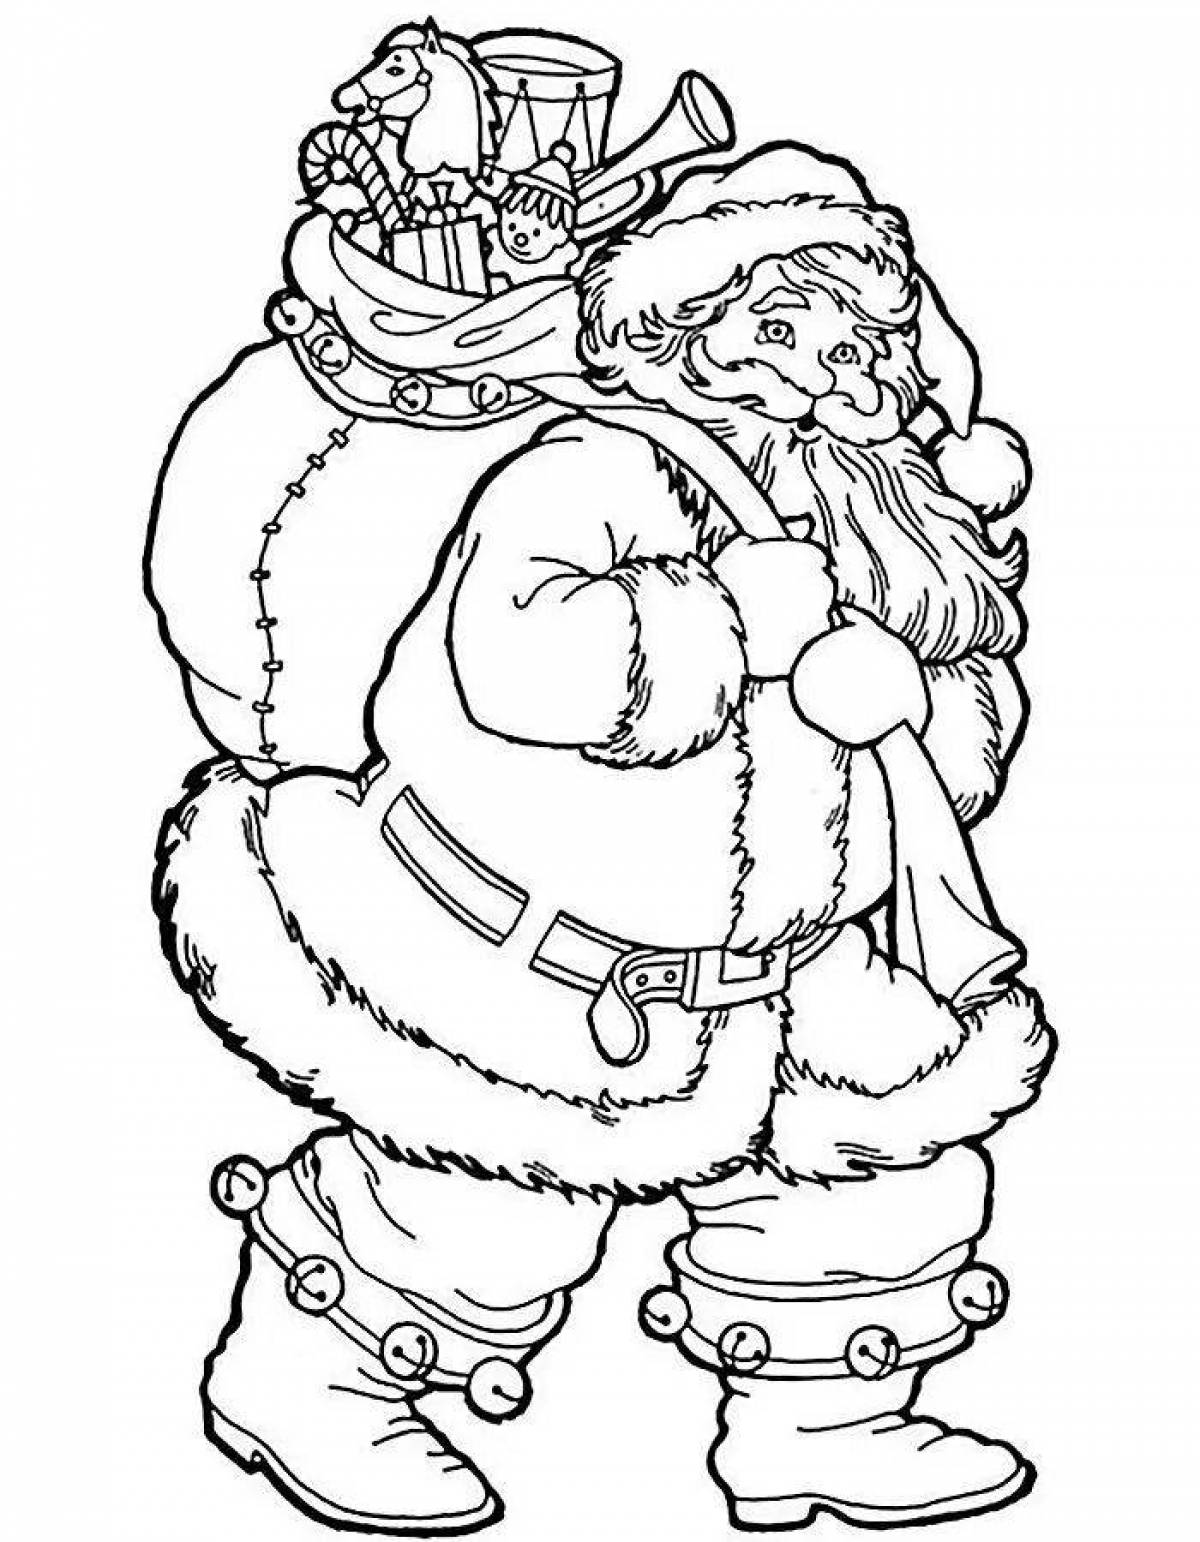 Rampant Santa Claus coloring book